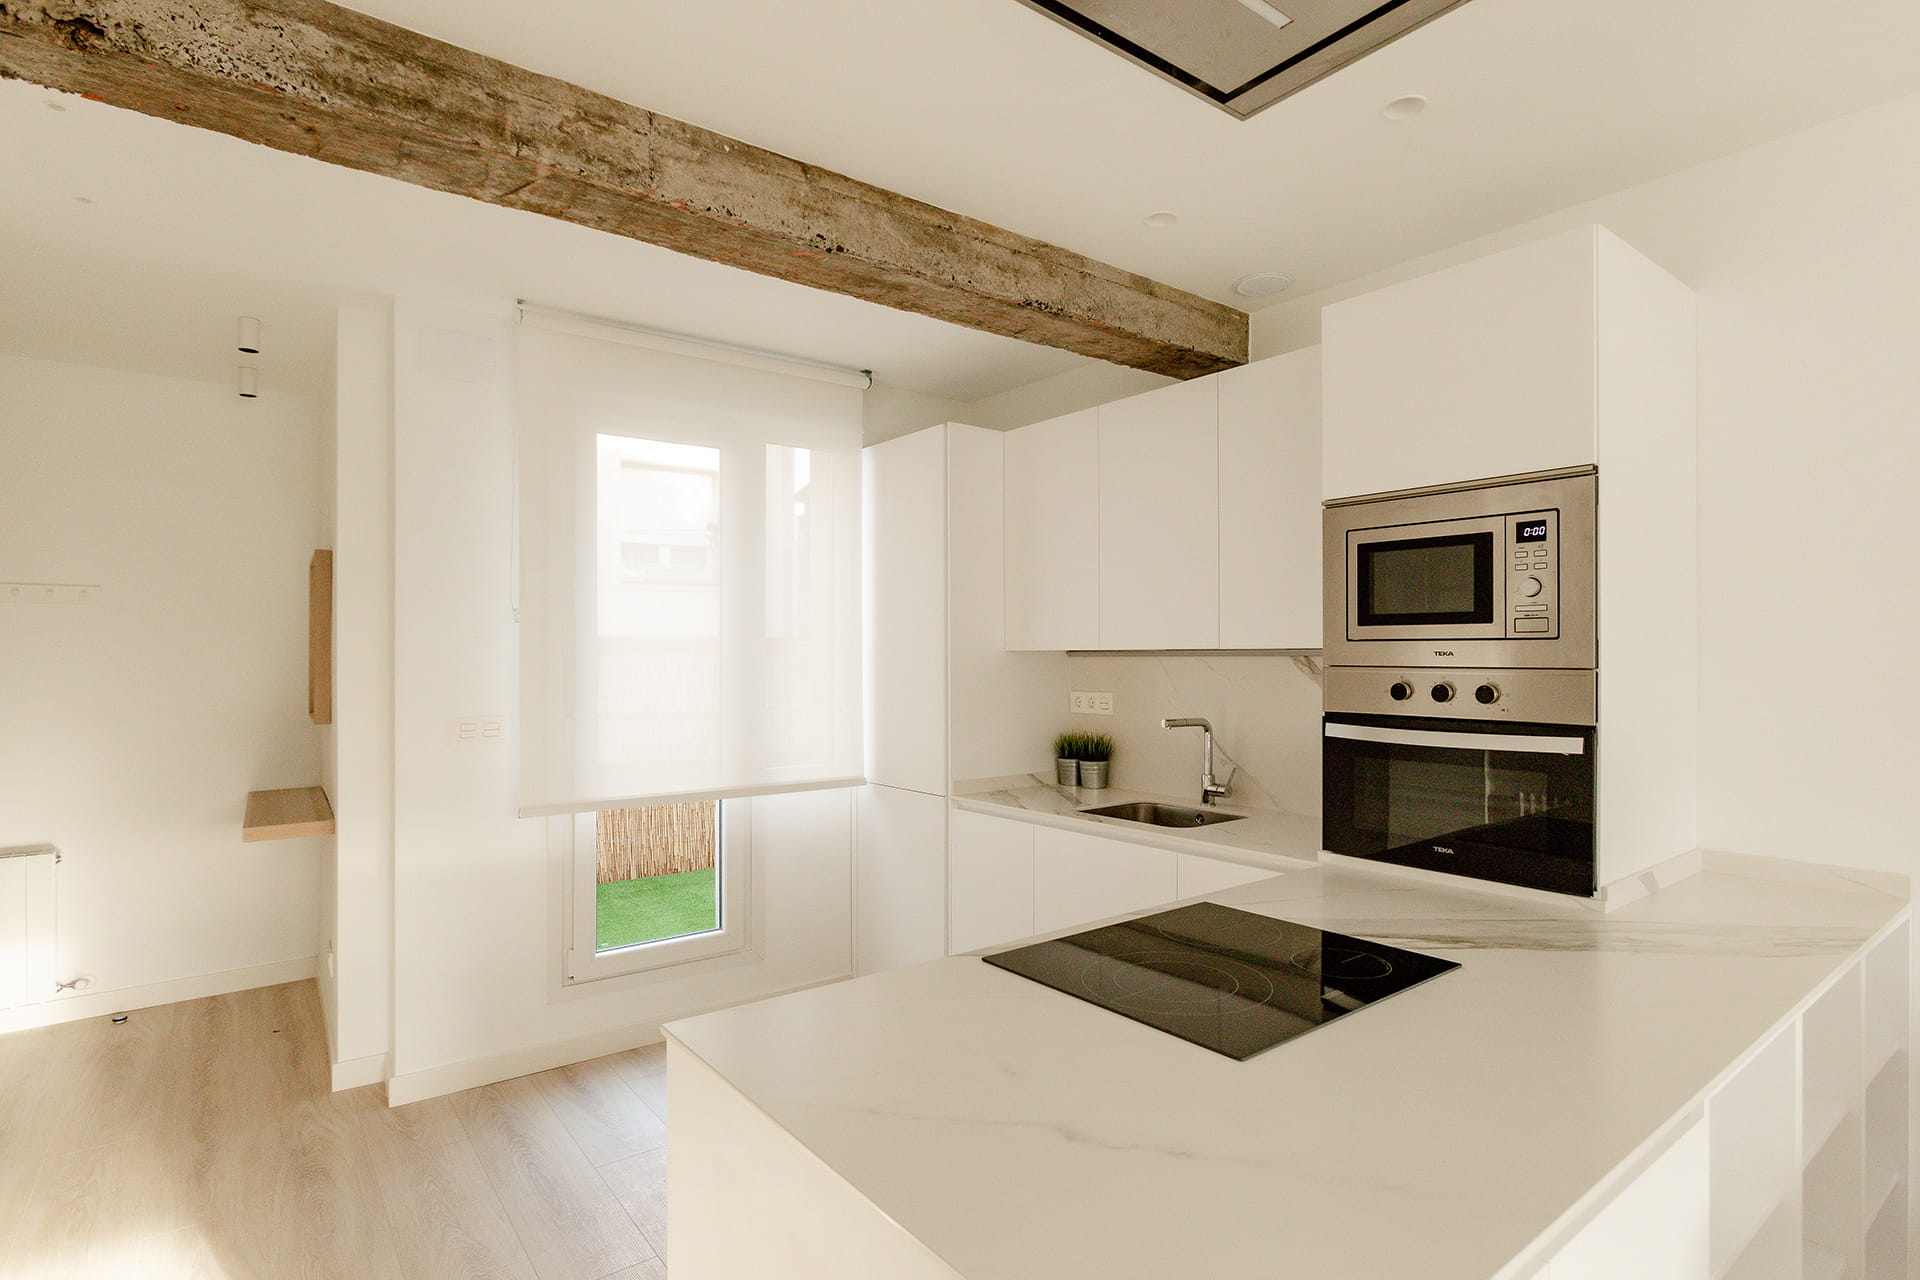 Flat with open-plan white Santos kitchen